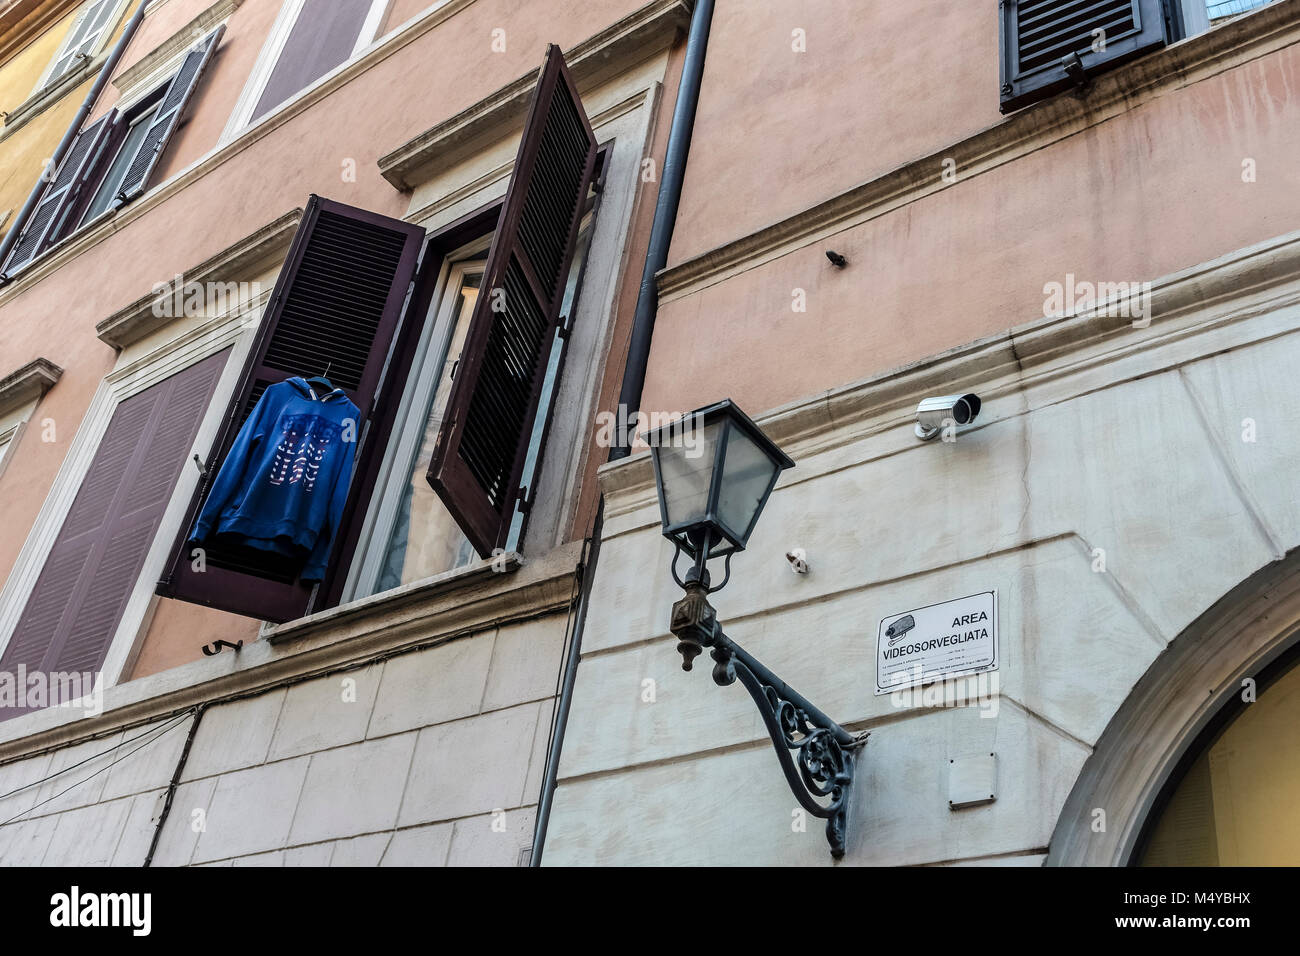 Vêtements suspendus sur une fenêtre d'un immeuble d'appartements dans le centre-ville de Rome, Italie, Europe, Union européenne, UE. Lampost. Banque D'Images